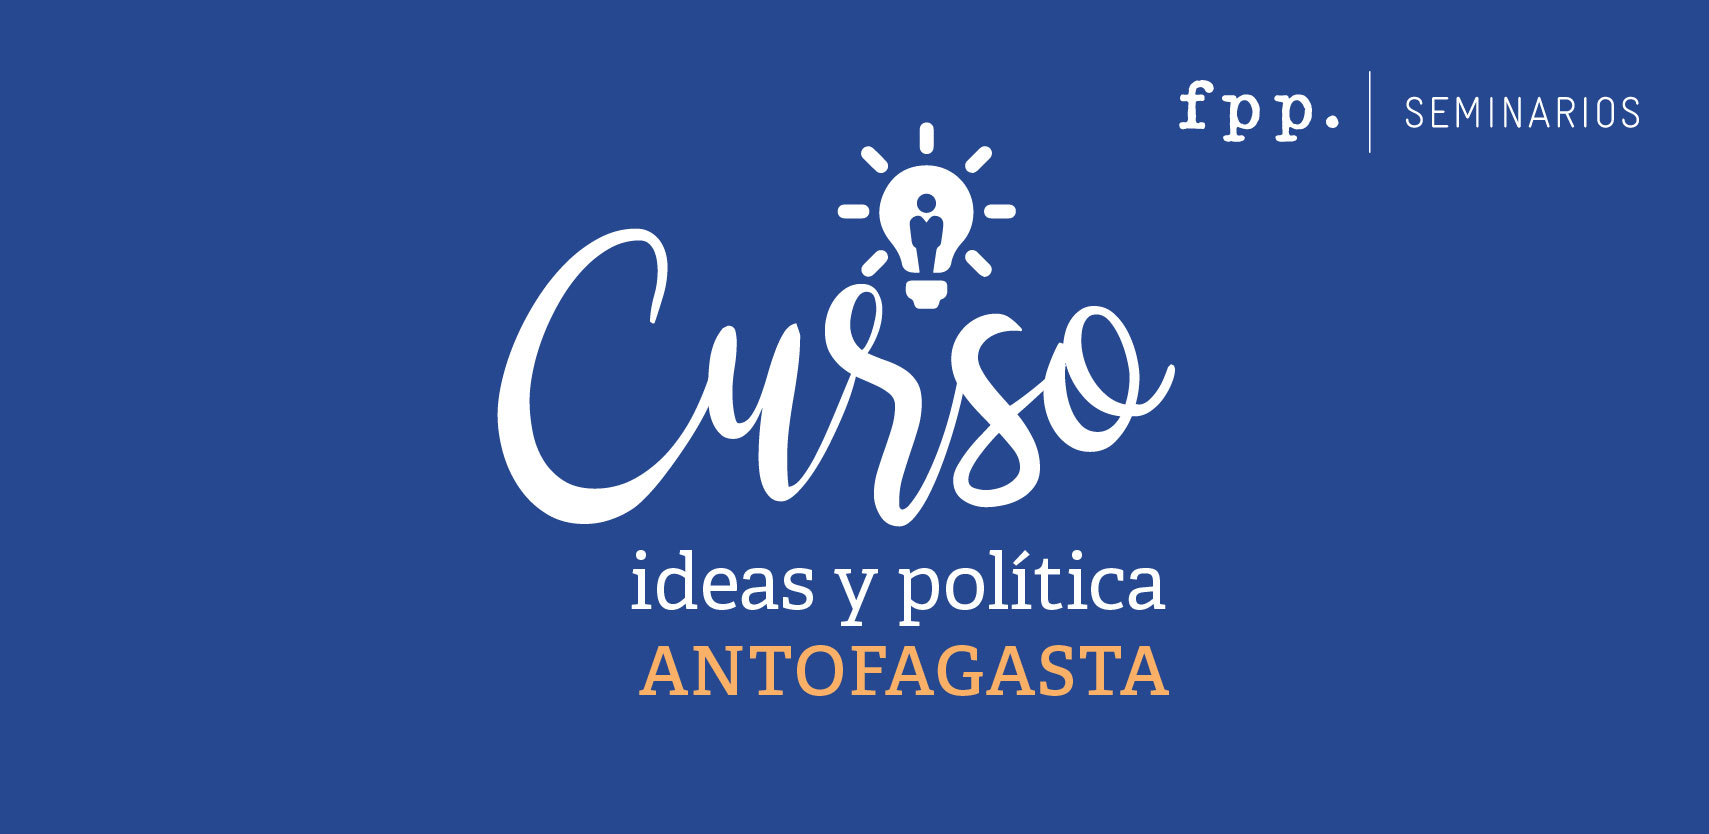 Curso: Ideas y política FPP en Antofagasta